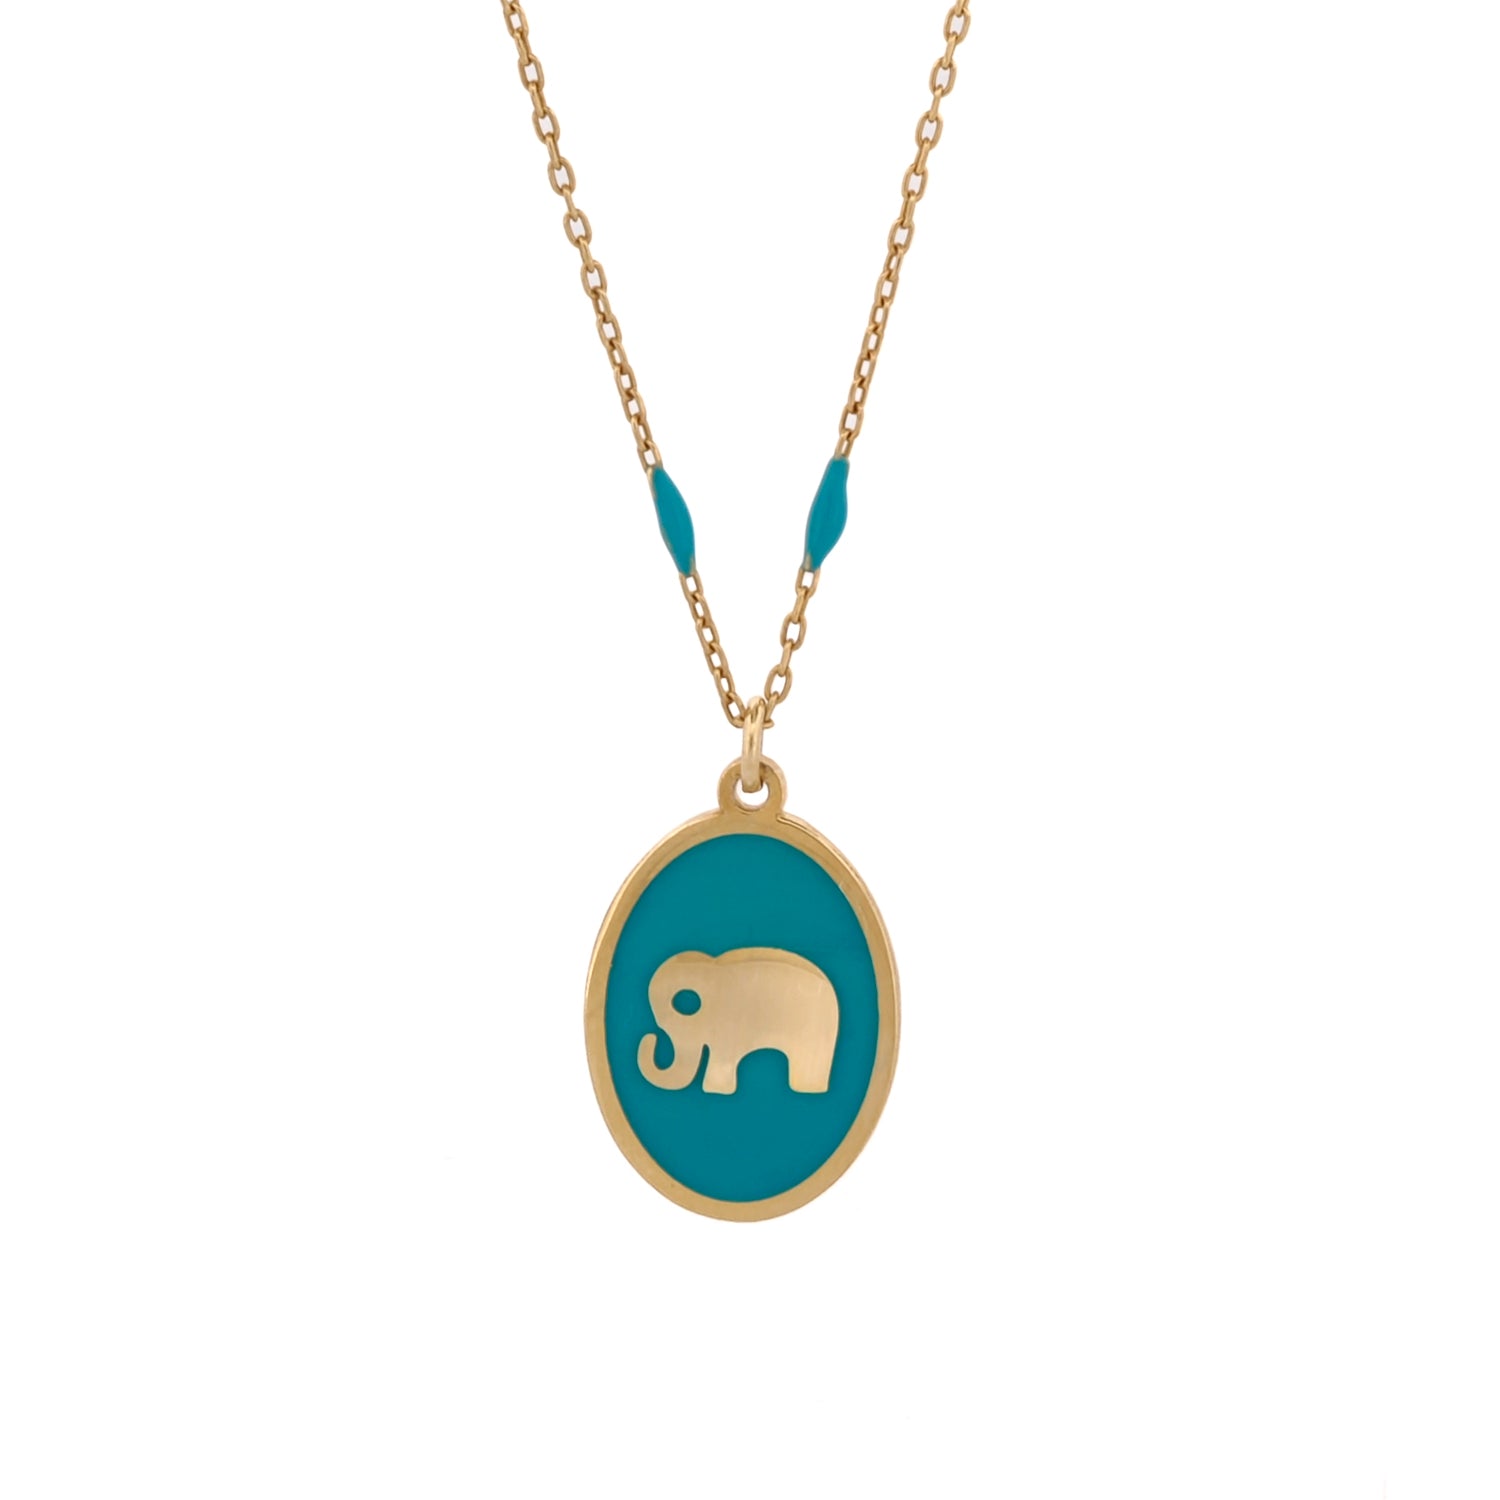 Elegant Gold & Turquoise Necklace with Elephant Pendant